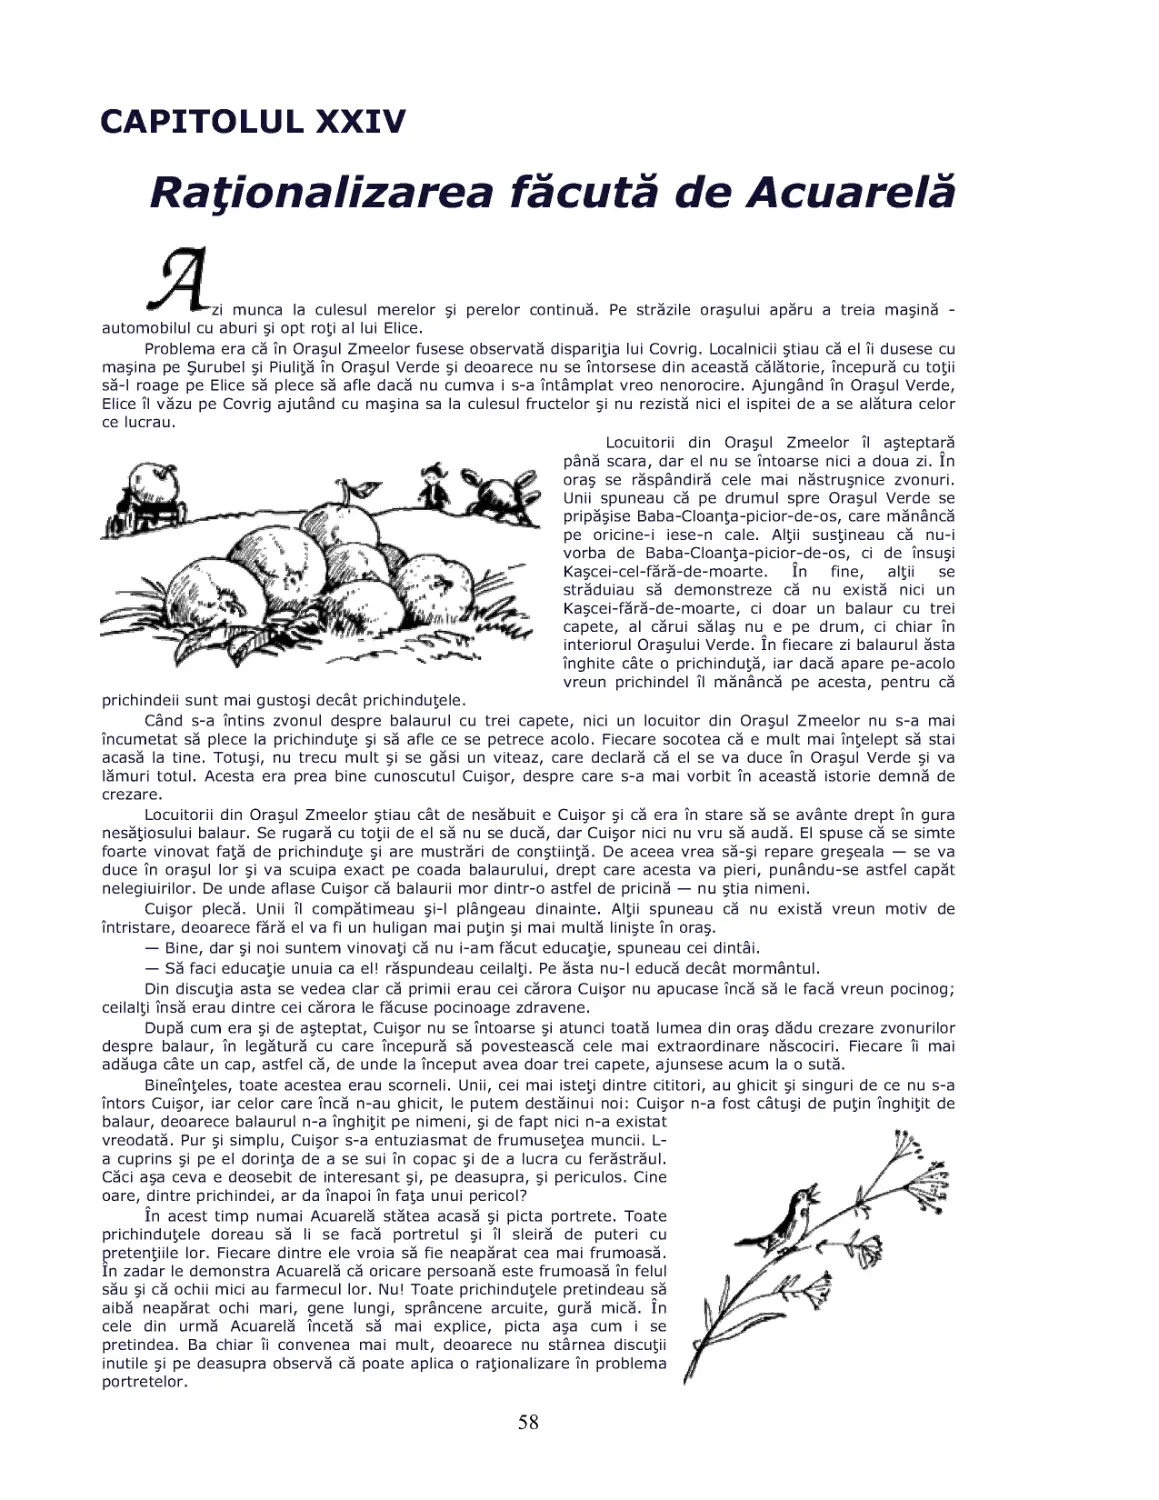 Cap.XXIV Rationalizarea facuta de Acuarela